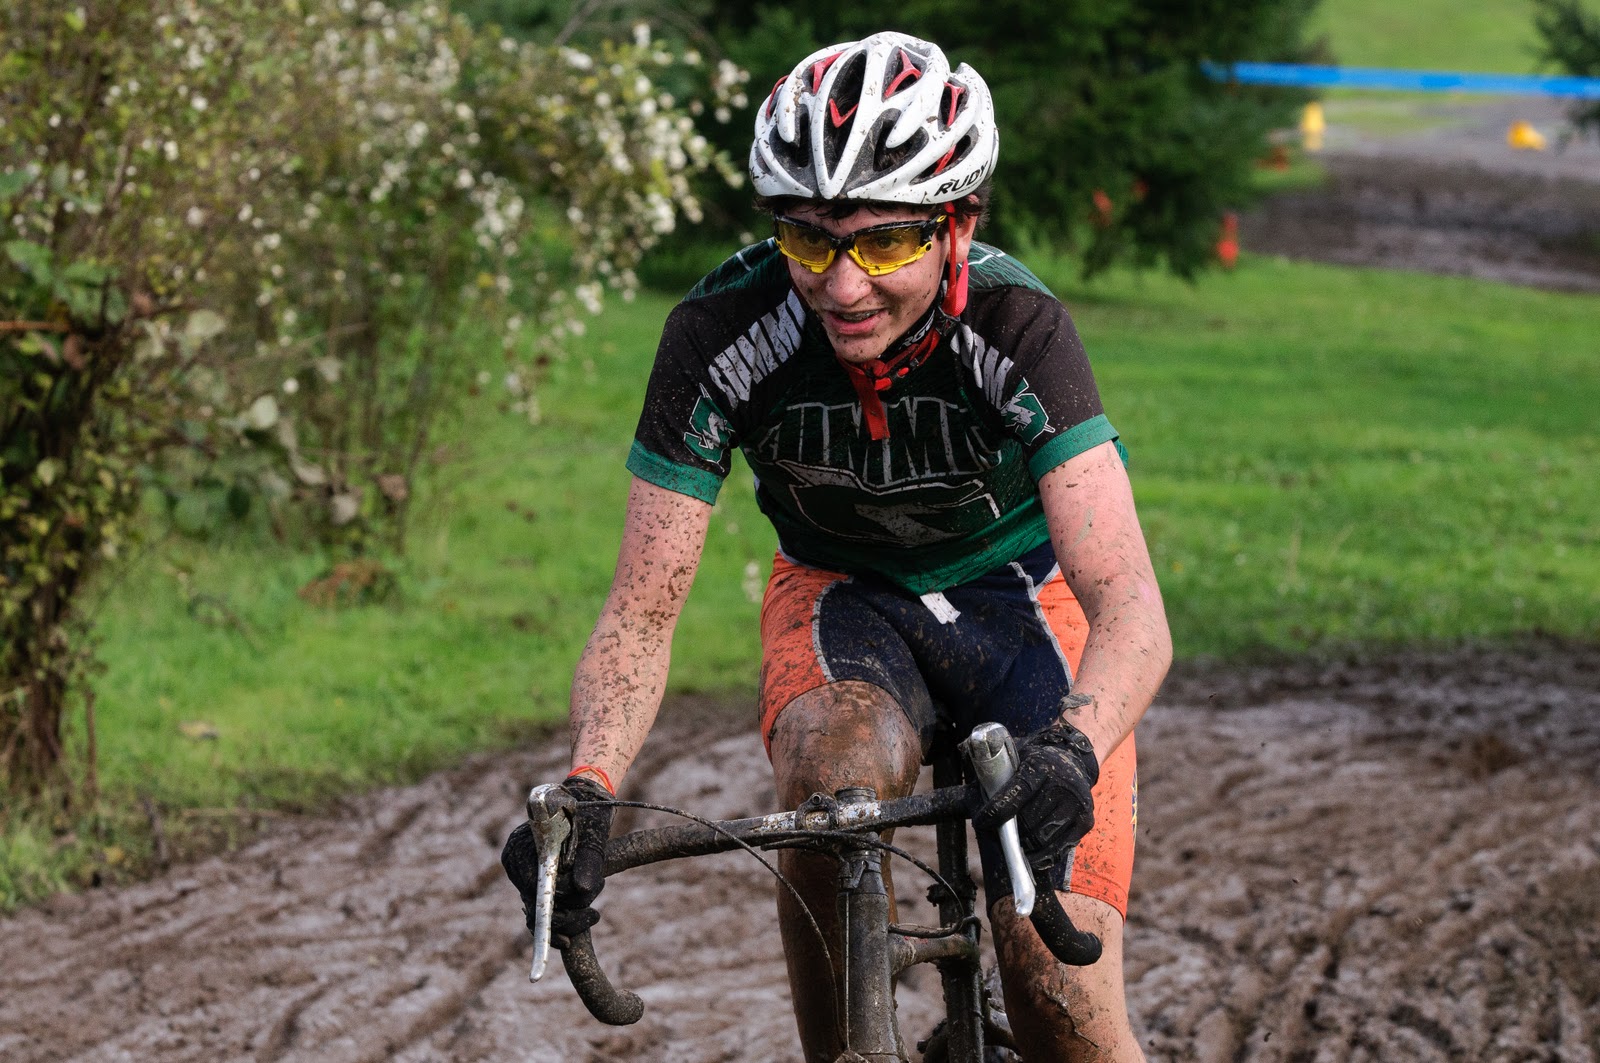 Colin looks pretty content in the mud-©Curt  Hawkinson